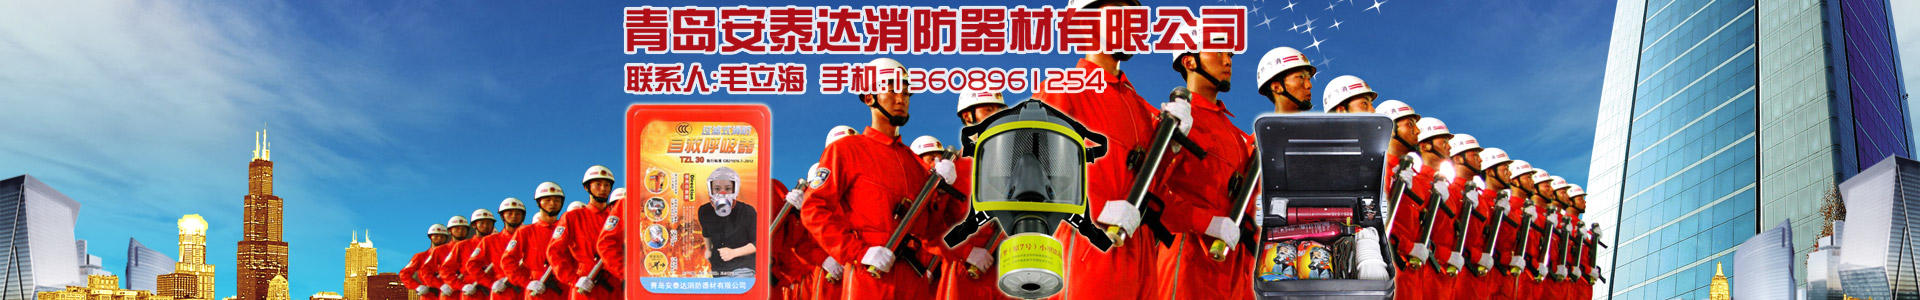 维修设备-青岛安泰达消防器材有限公司-